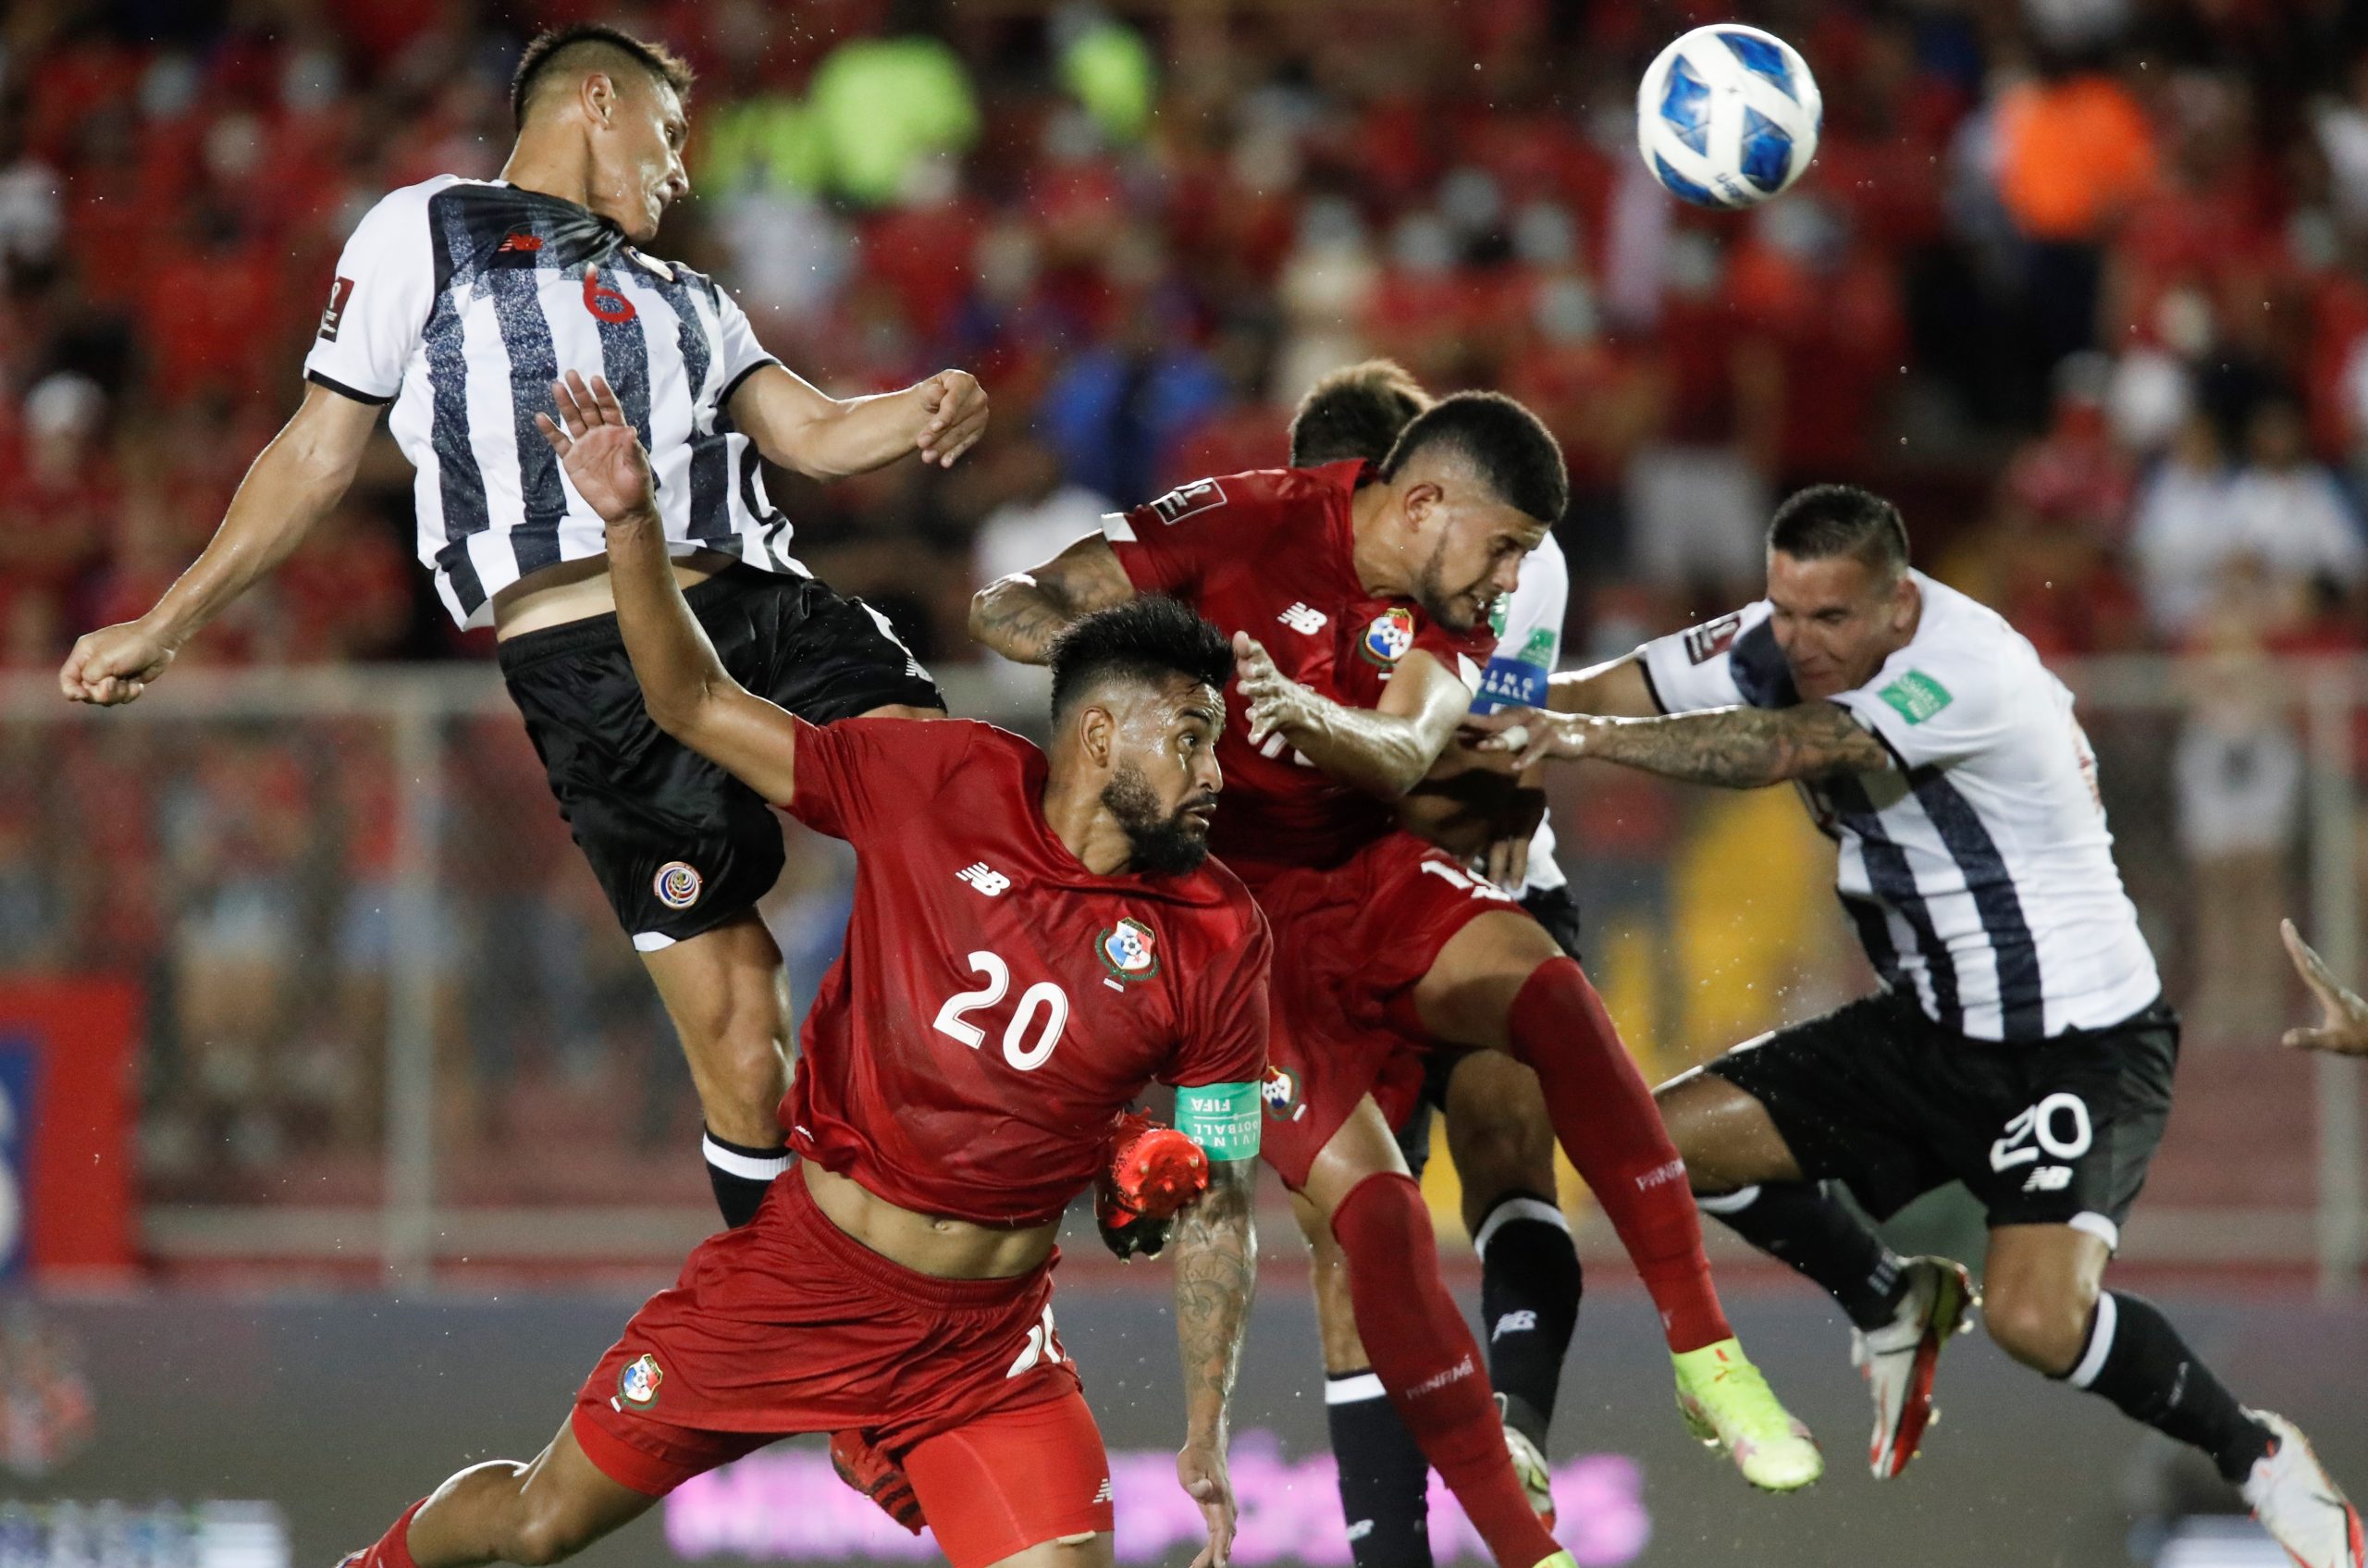 Panamá 0-0 Costa Rica: De nada sirve someter al rival si no marcamos los goles